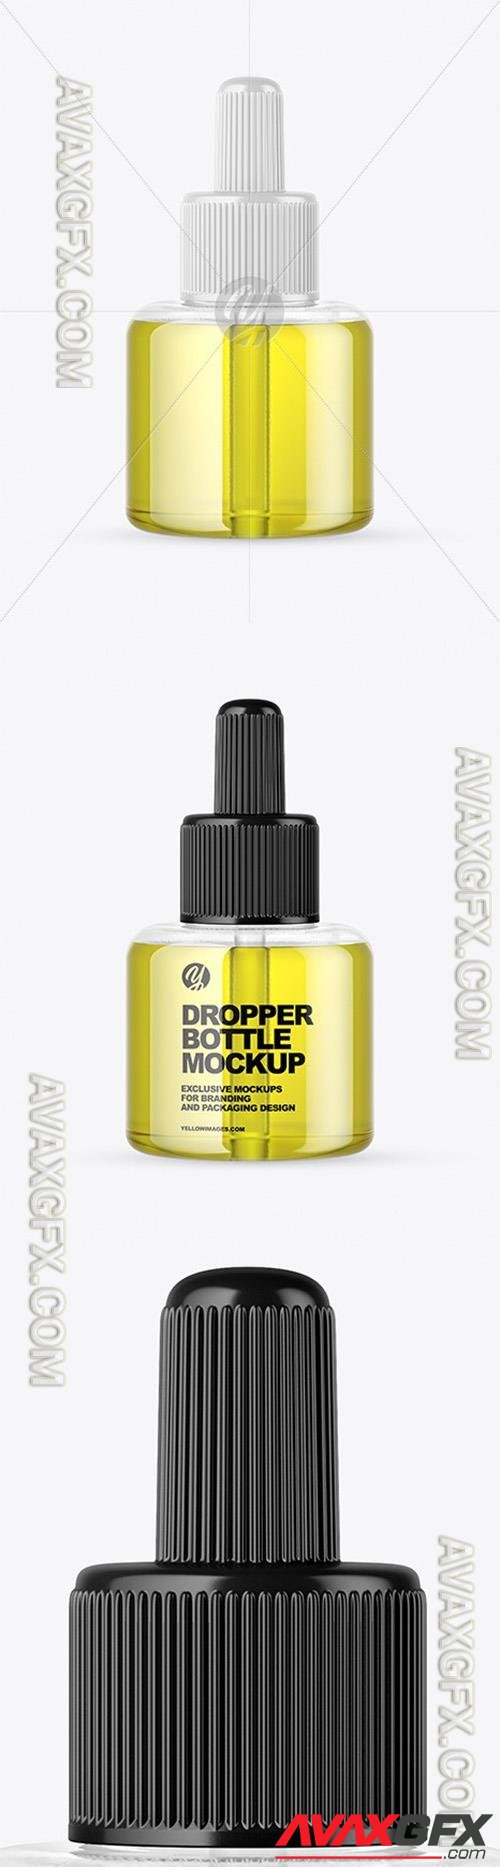 Clear Glass Dropper Bottle w/ Oil Mockup 64724 TIF